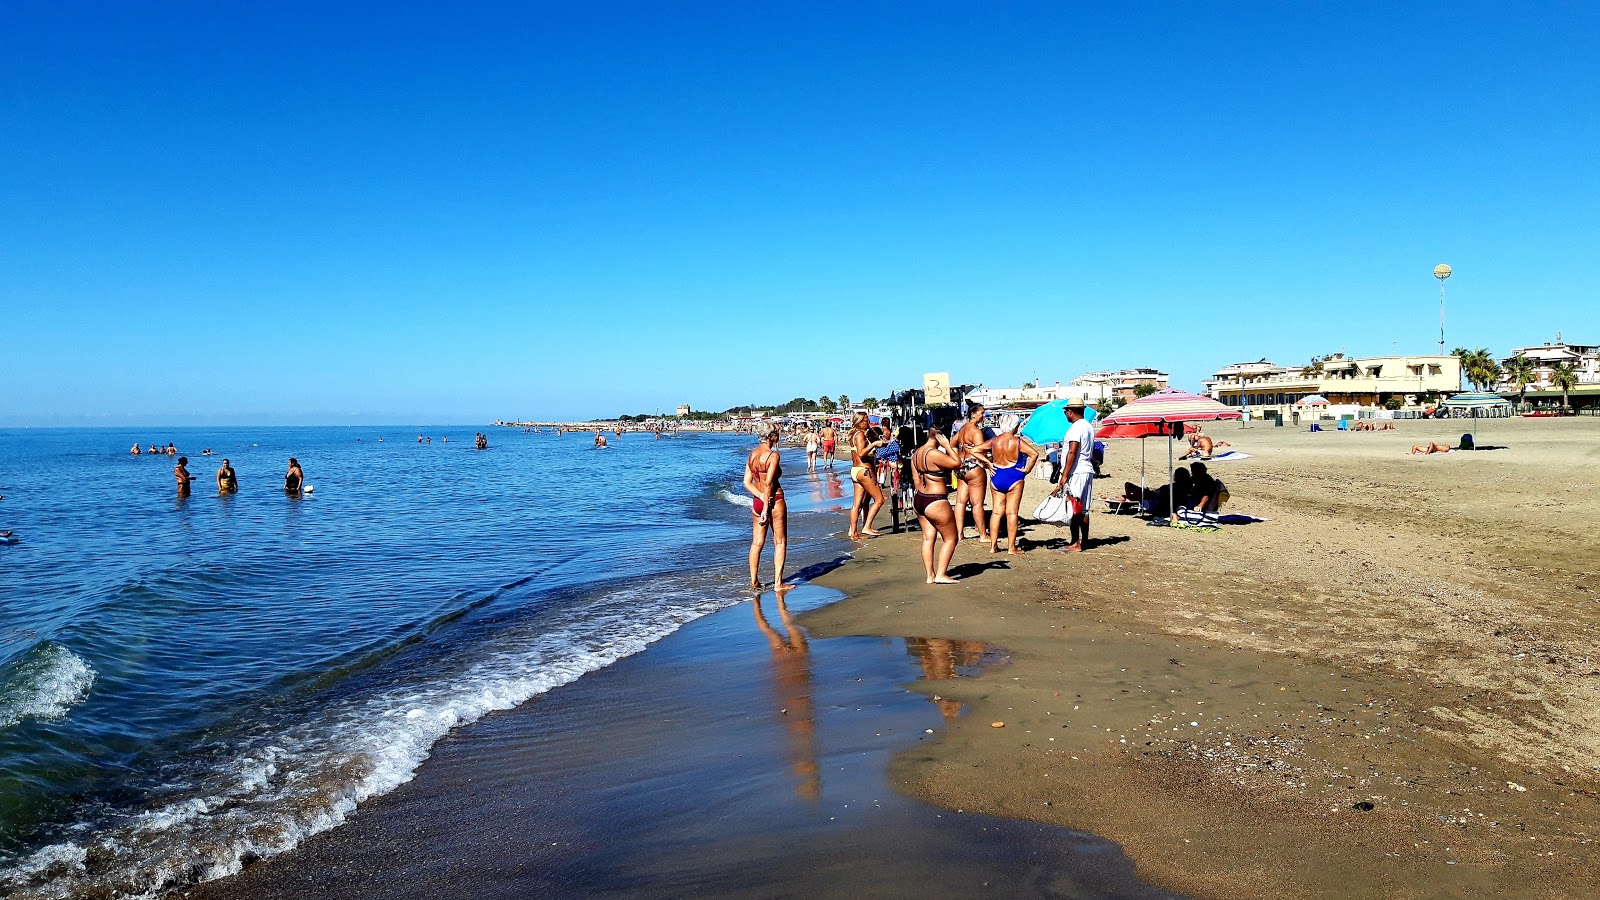 Photo of Spiaggia Attrezzata beach resort area